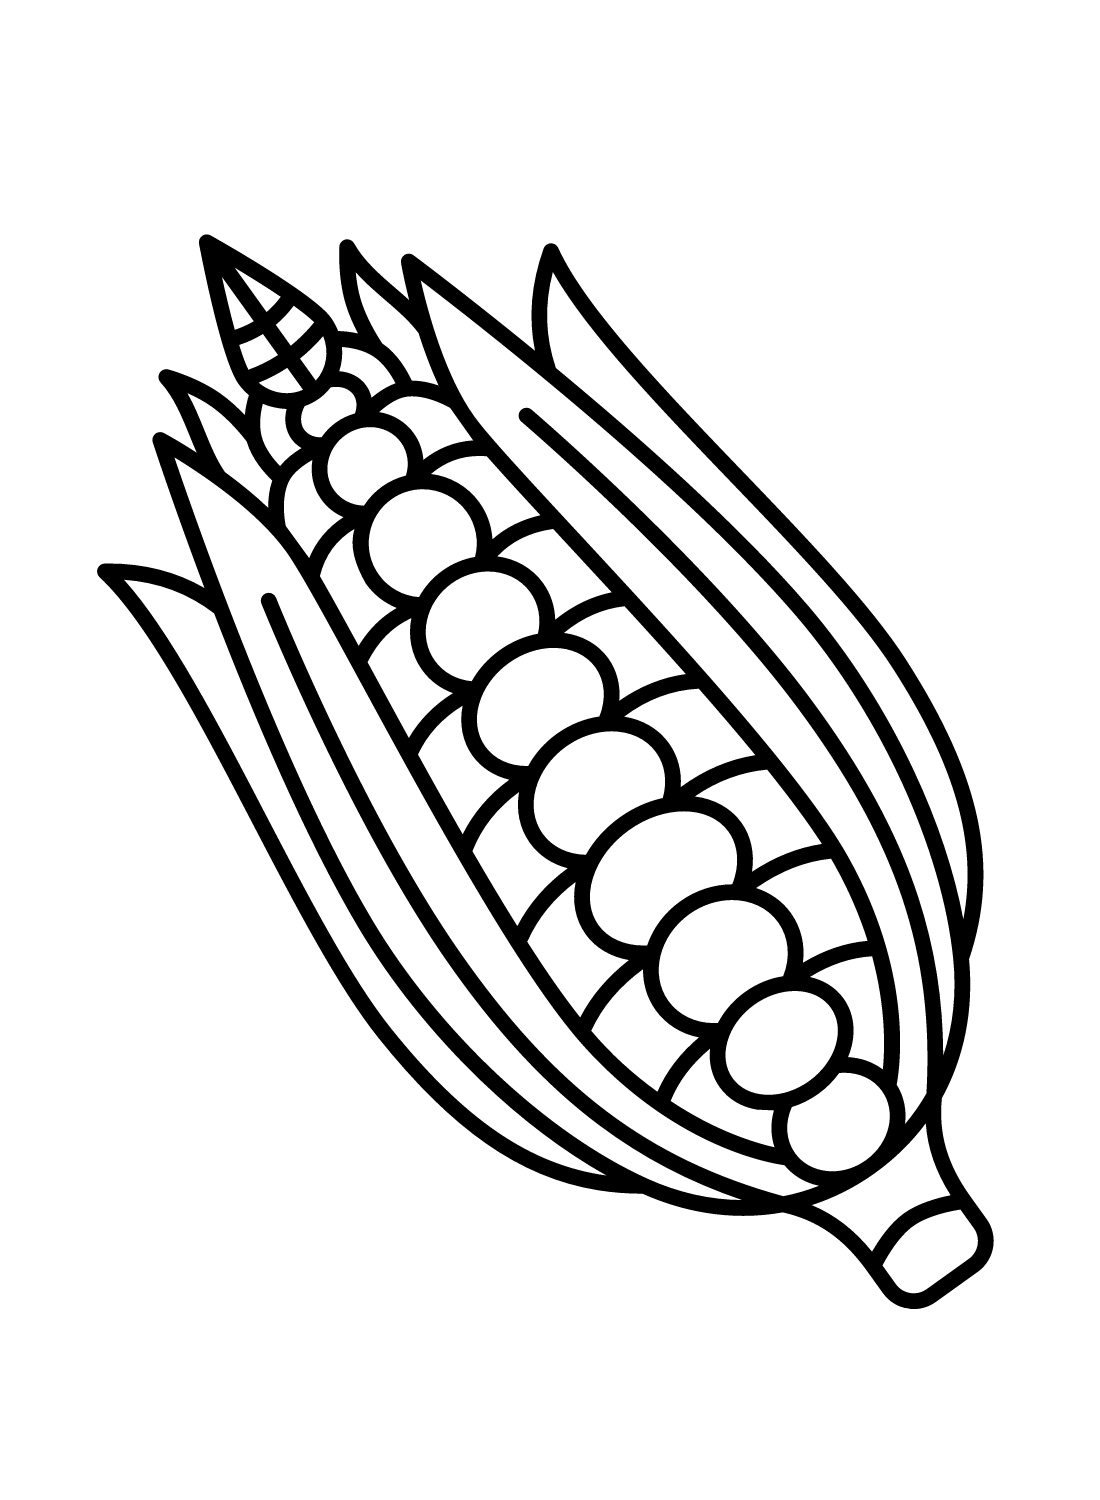 Maíz simple de maíz